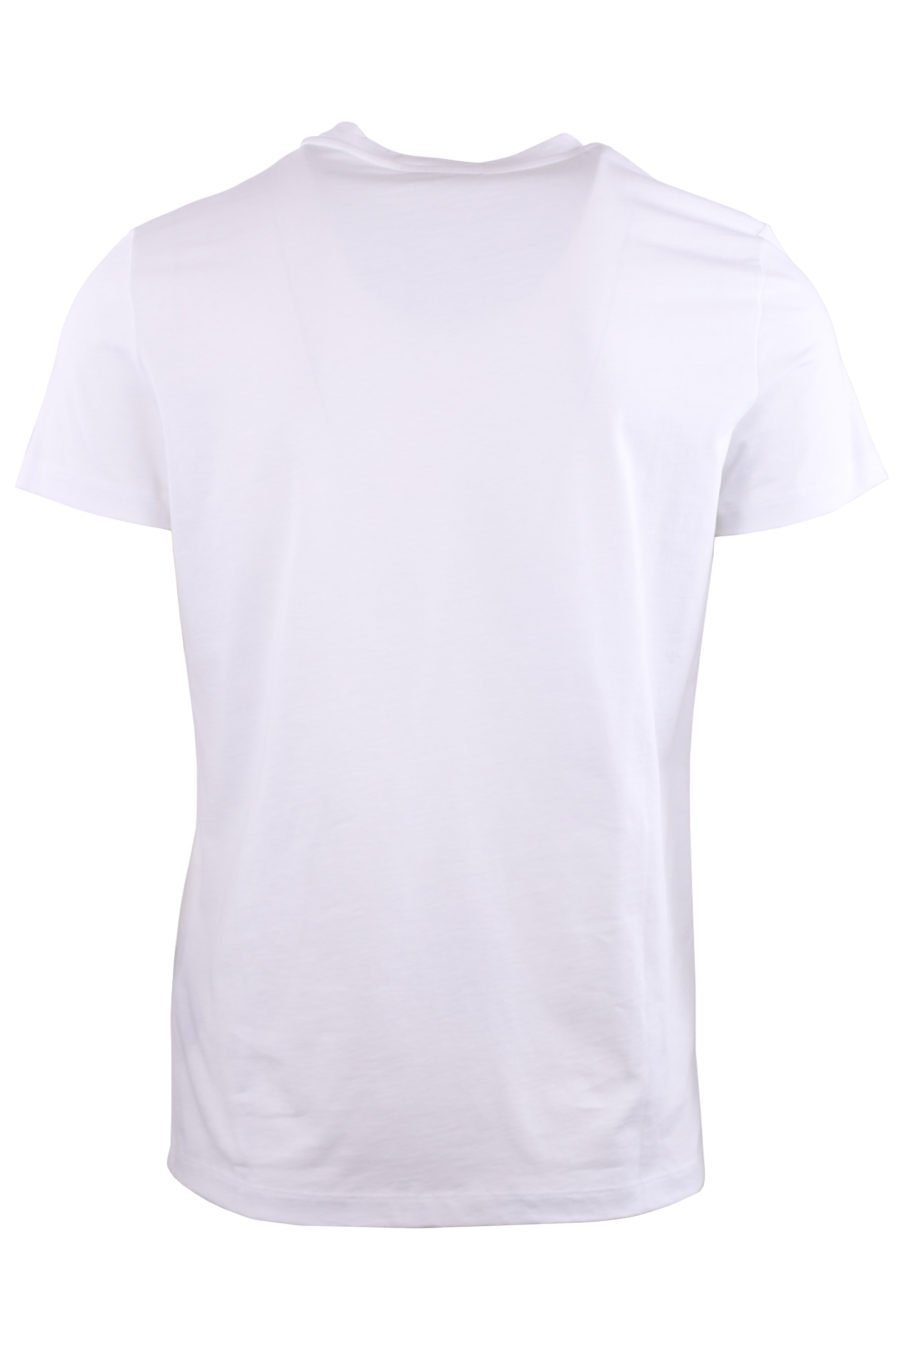 Camiseta blanca con logo de terciopelo azul - 870775bfe556d21719abee4666c3dcb714f6007e